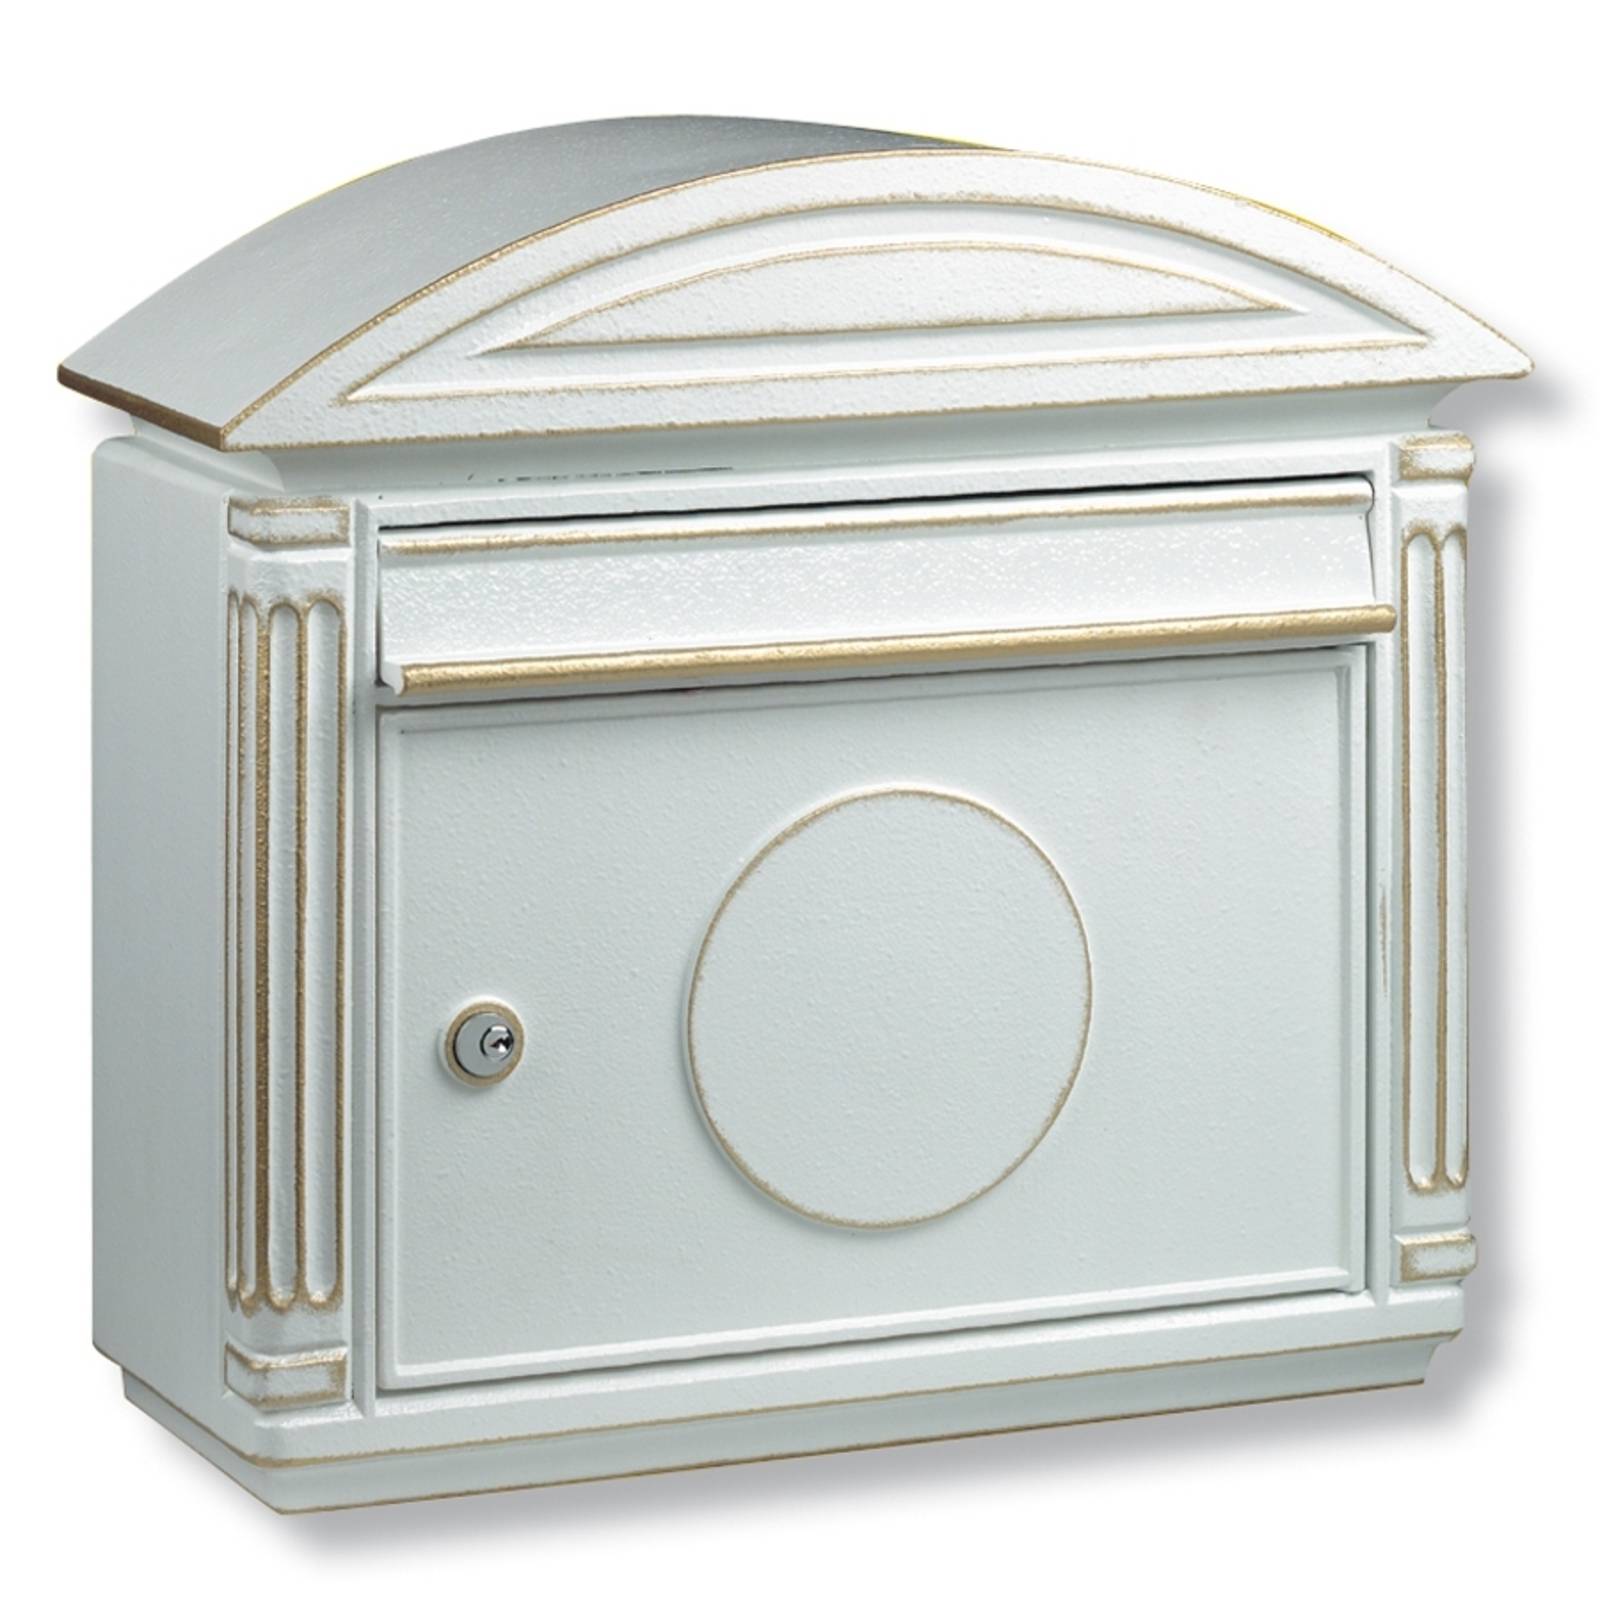 Die-cast aluminium letter box Venezia, white